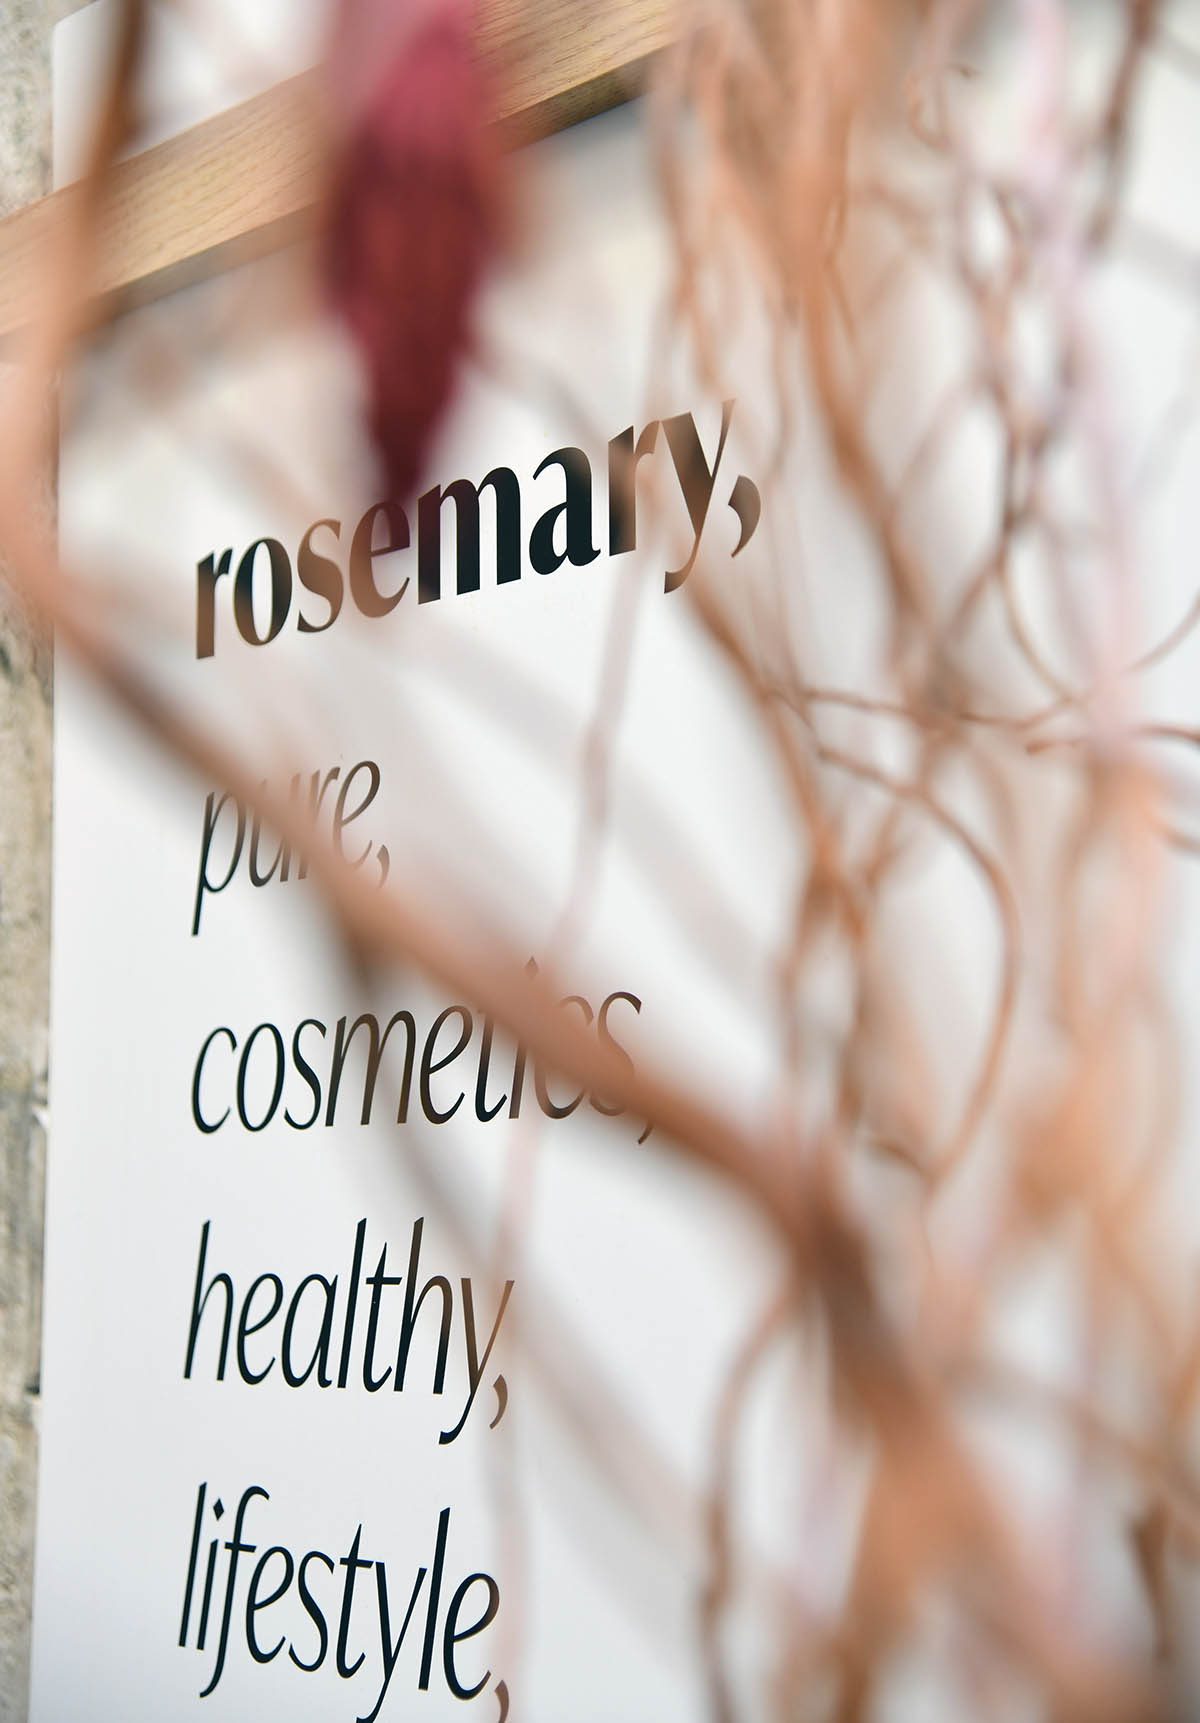 Prijavite se na besplatno profesionalno šminkanje vrhunskom prirodnom kozmetikom u beauty oazi Rosemary!